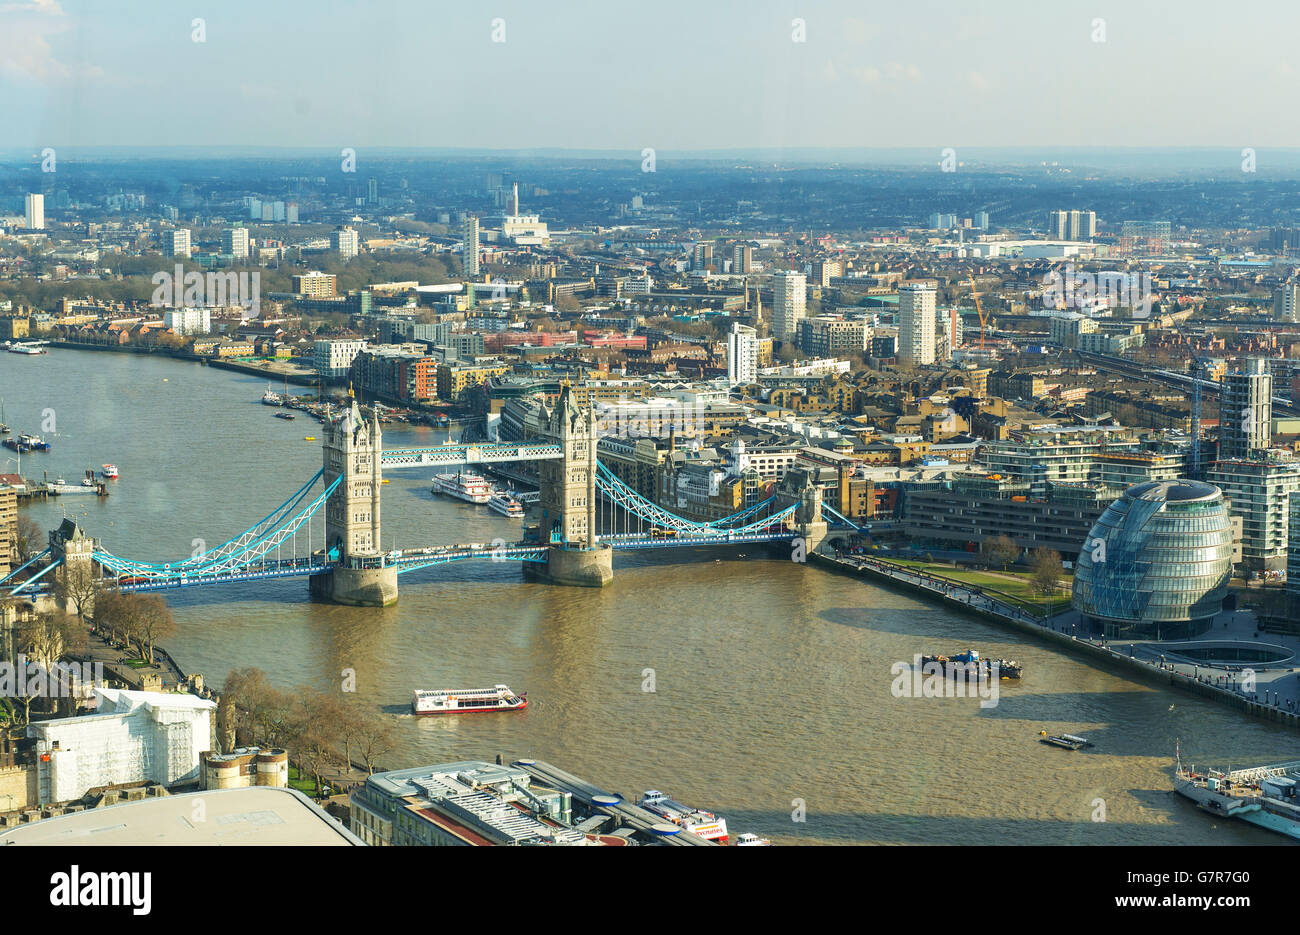 Vista generale del centro di Londra, incluso il Tower Bridge e il municipio, visto dallo Sky Garden al 20 di Fenchurch Street. PREMERE ASSOCIAZIONE foto. Data immagine: Mercoledì 25 marzo 2015. Il credito fotografico dovrebbe essere: Dominic Lipinski/PA Wire Foto Stock